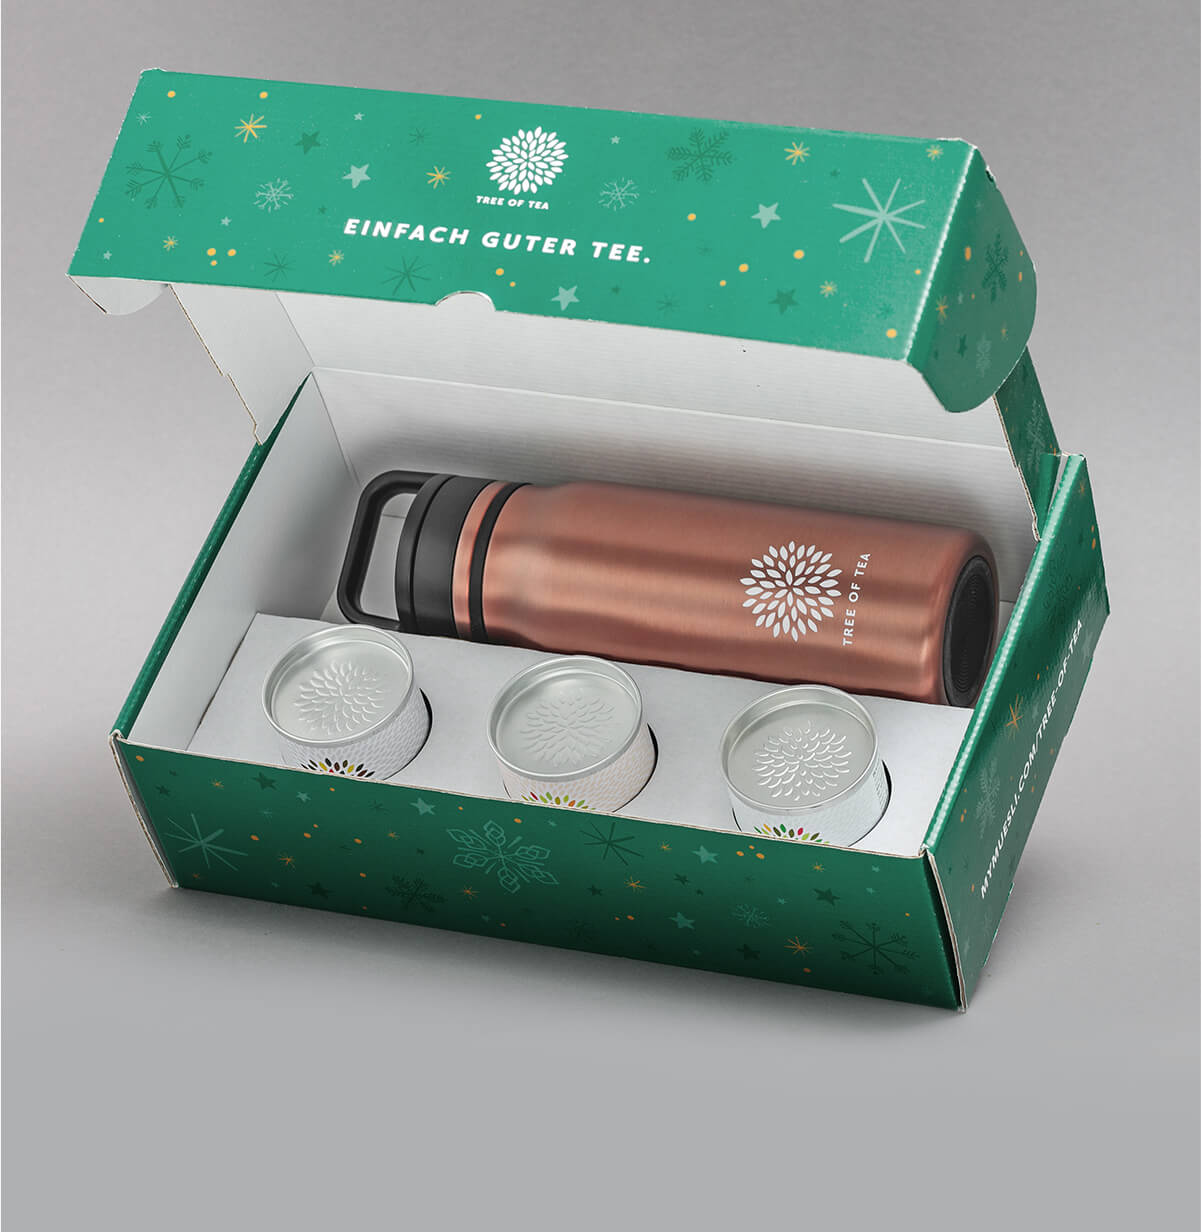 Weihnachtliches Thermo Bottle 2go Set in der schicken Geschenkbox